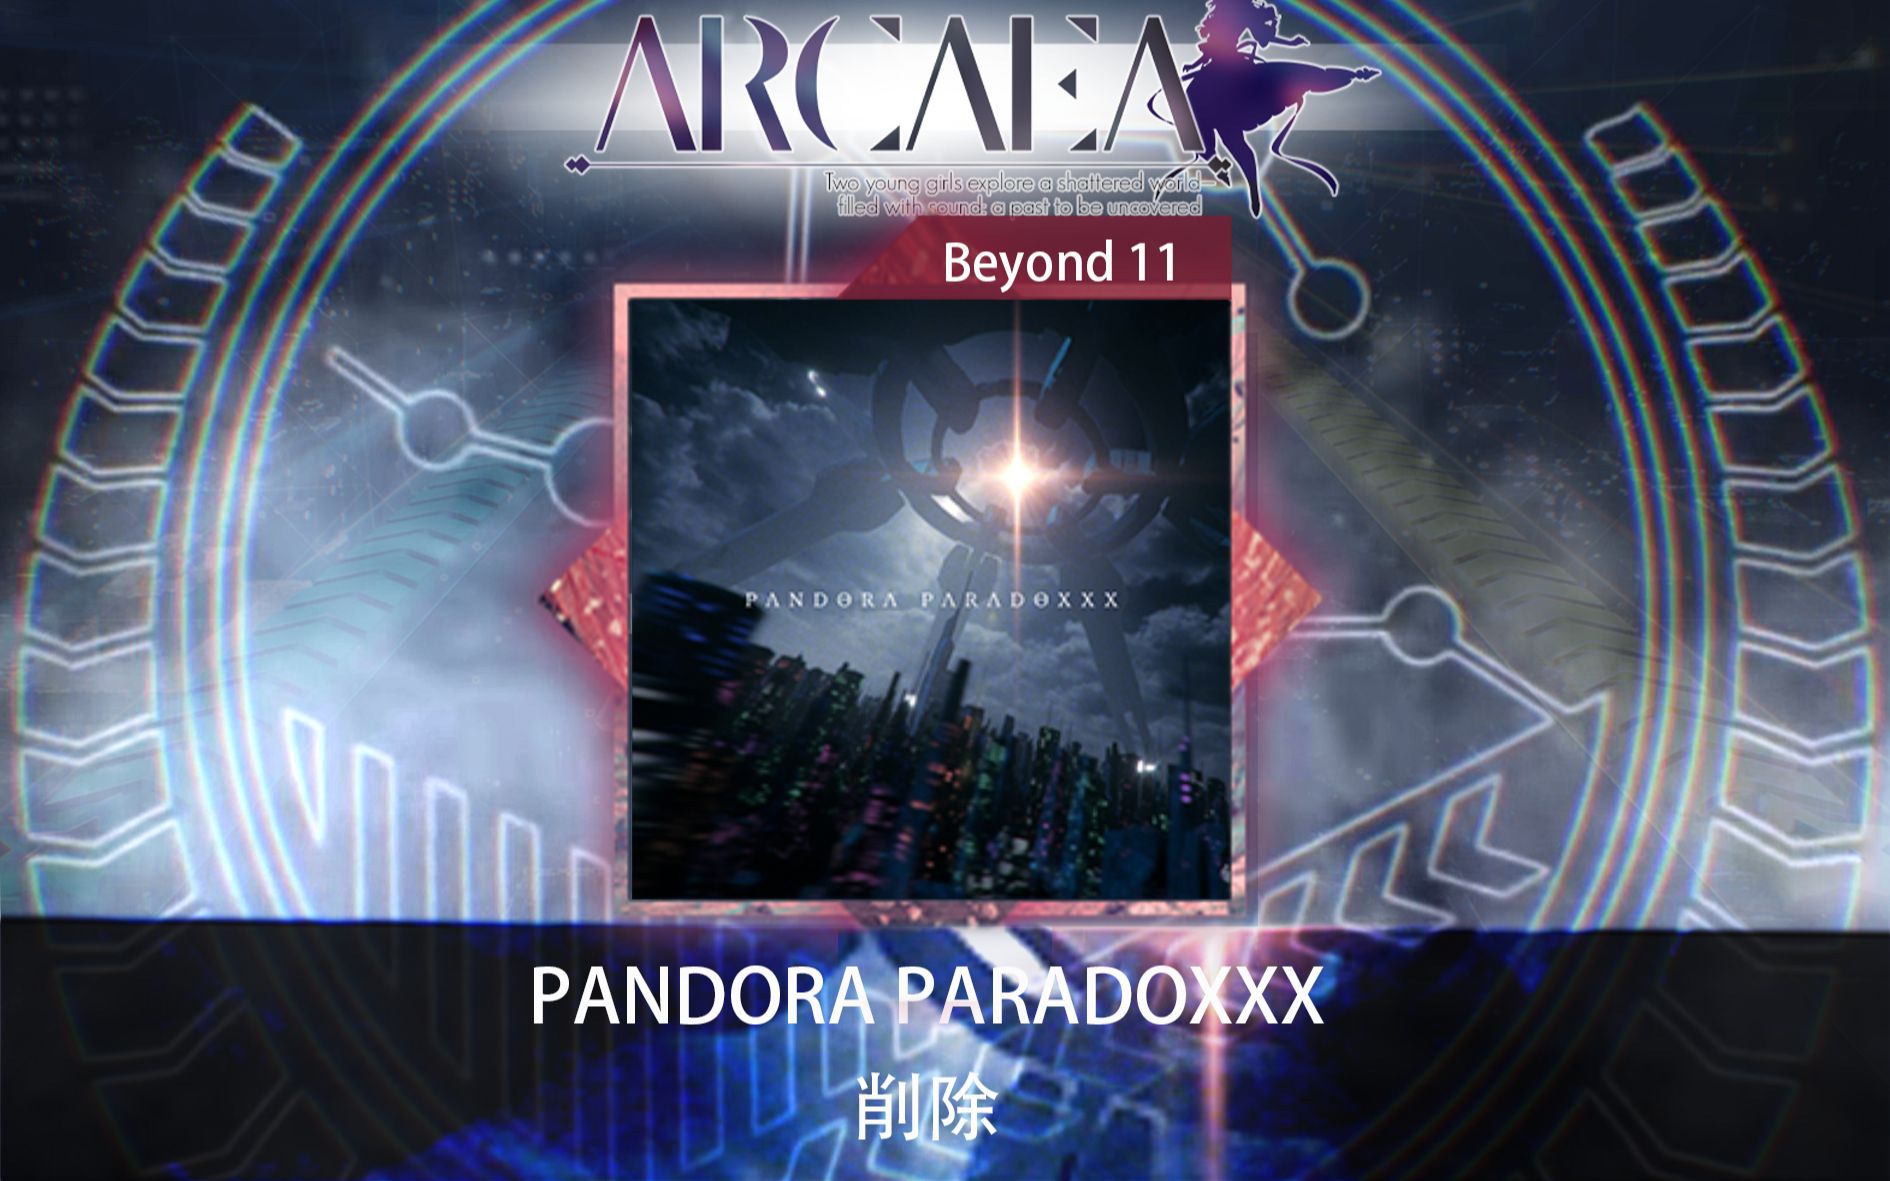 【Arcaea自制/重制】禁忌魔盒!!! PANDORA PARADOXXX by 削除 BYD 11